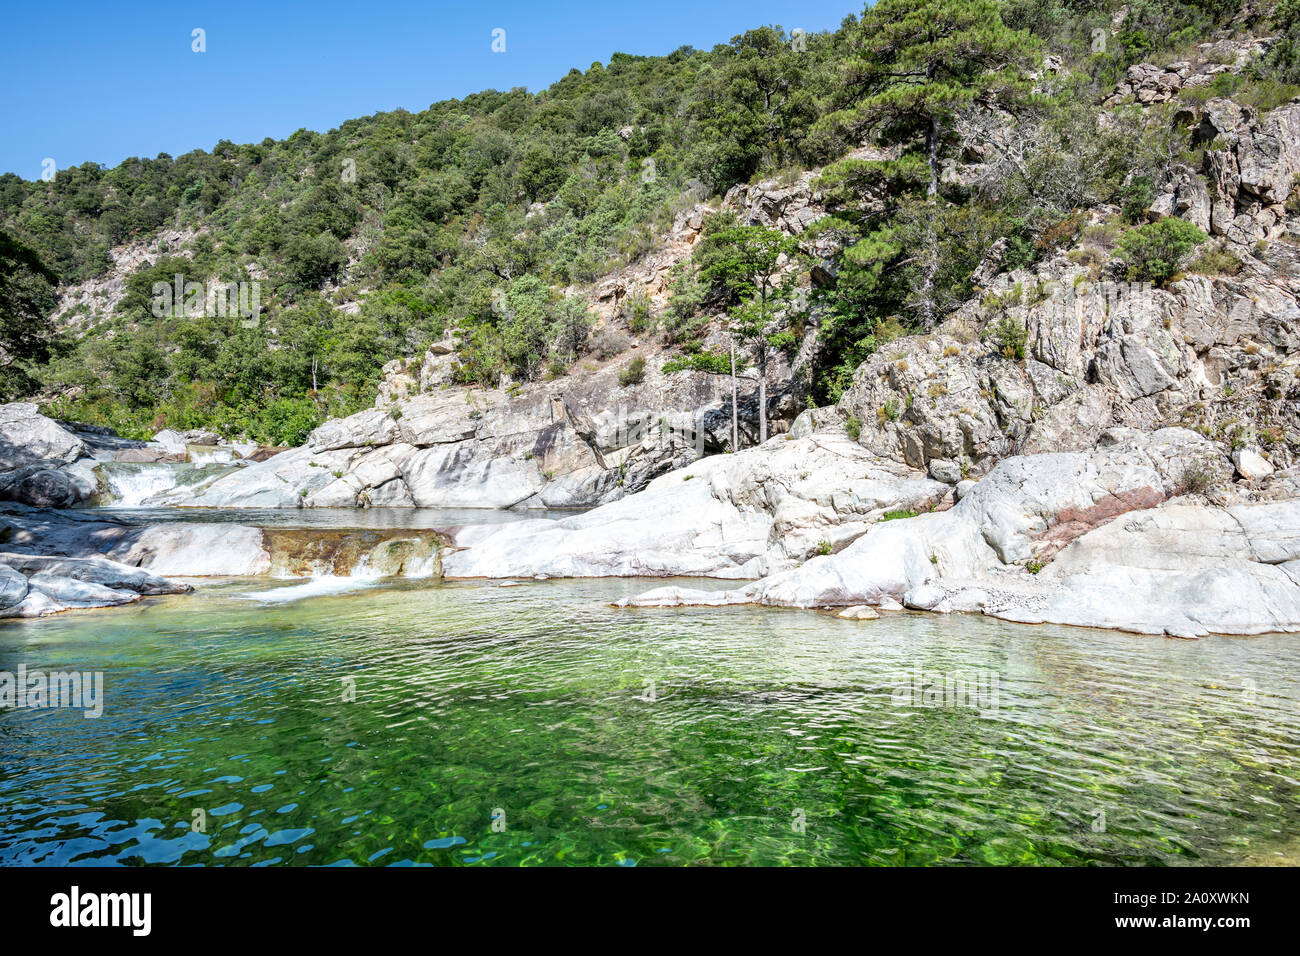 Rivière avec piscines naturelles et forêt de Travu valley. Chisà, Corse, France Banque D'Images